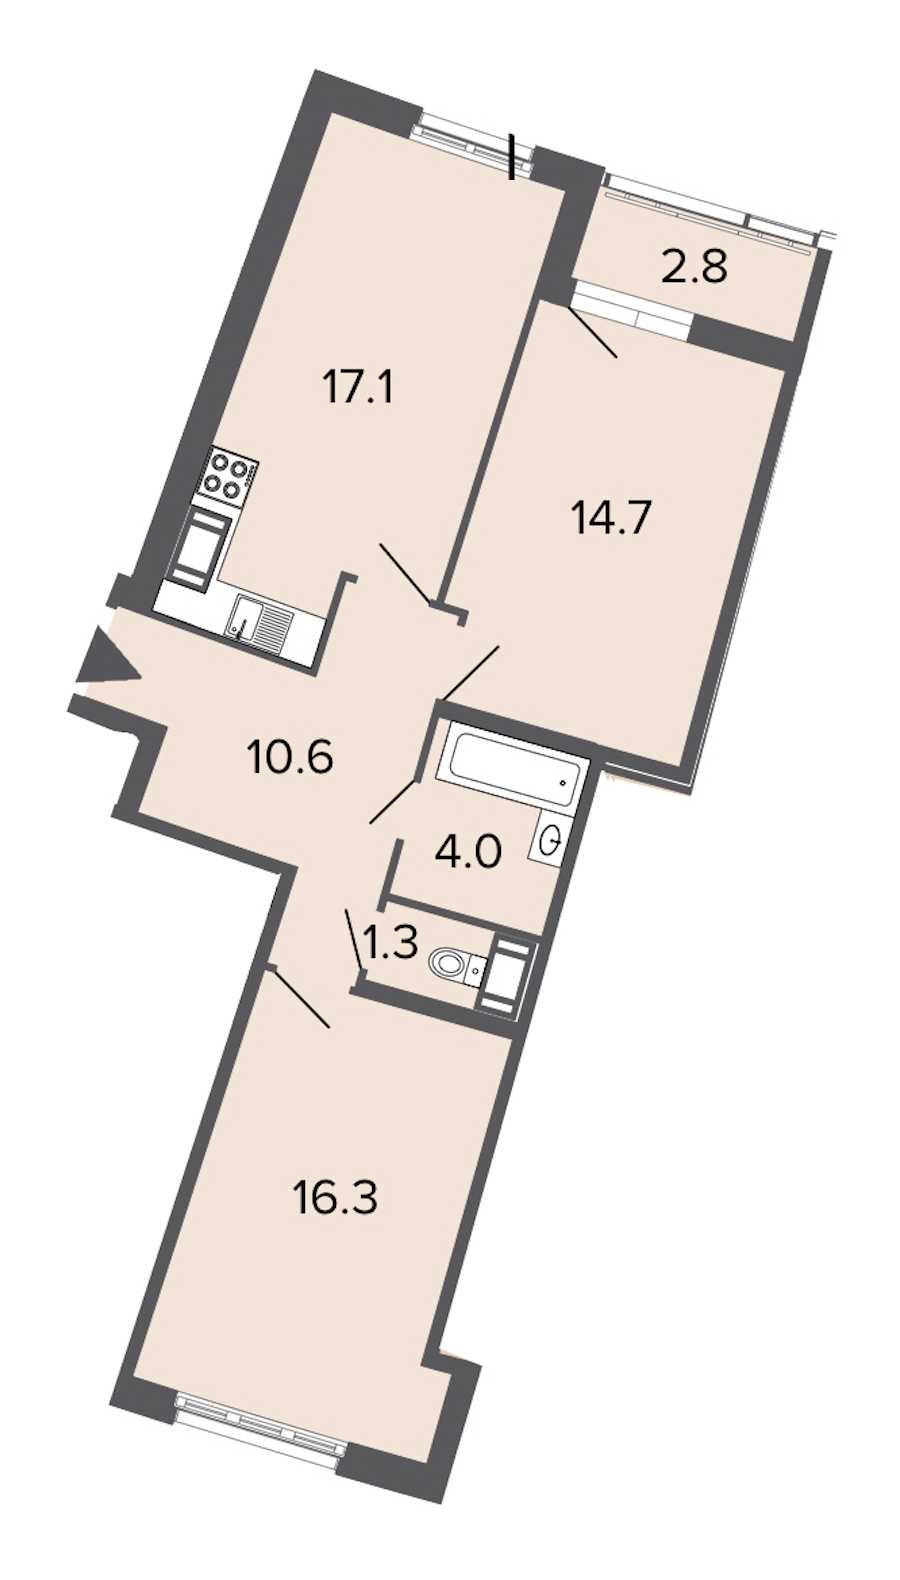 Двухкомнатная квартира в : площадь 64 м2 , этаж: 19 – купить в Санкт-Петербурге